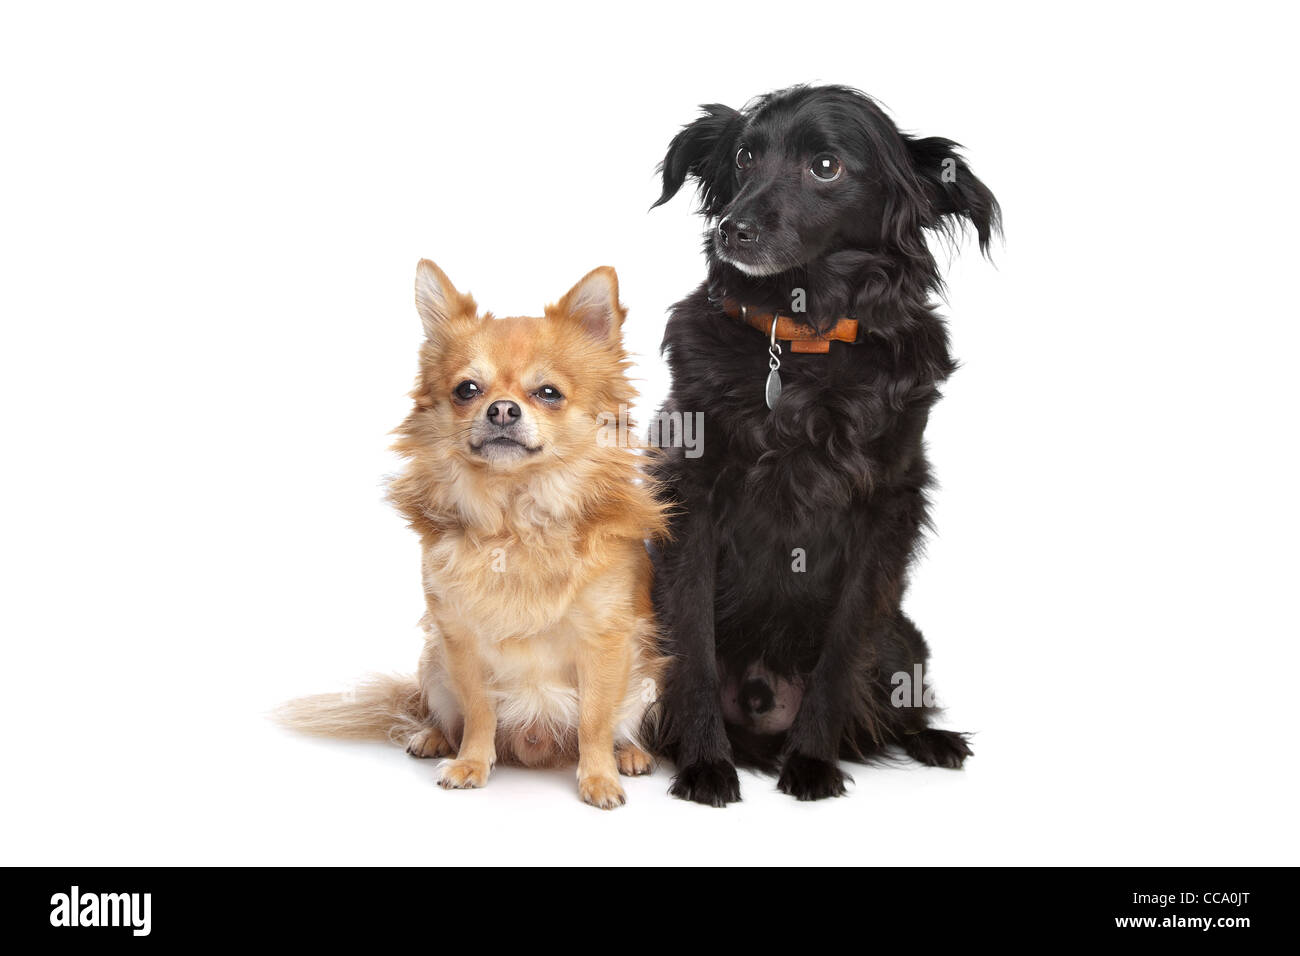 Chihuahua et un black dog devant un fond blanc Banque D'Images